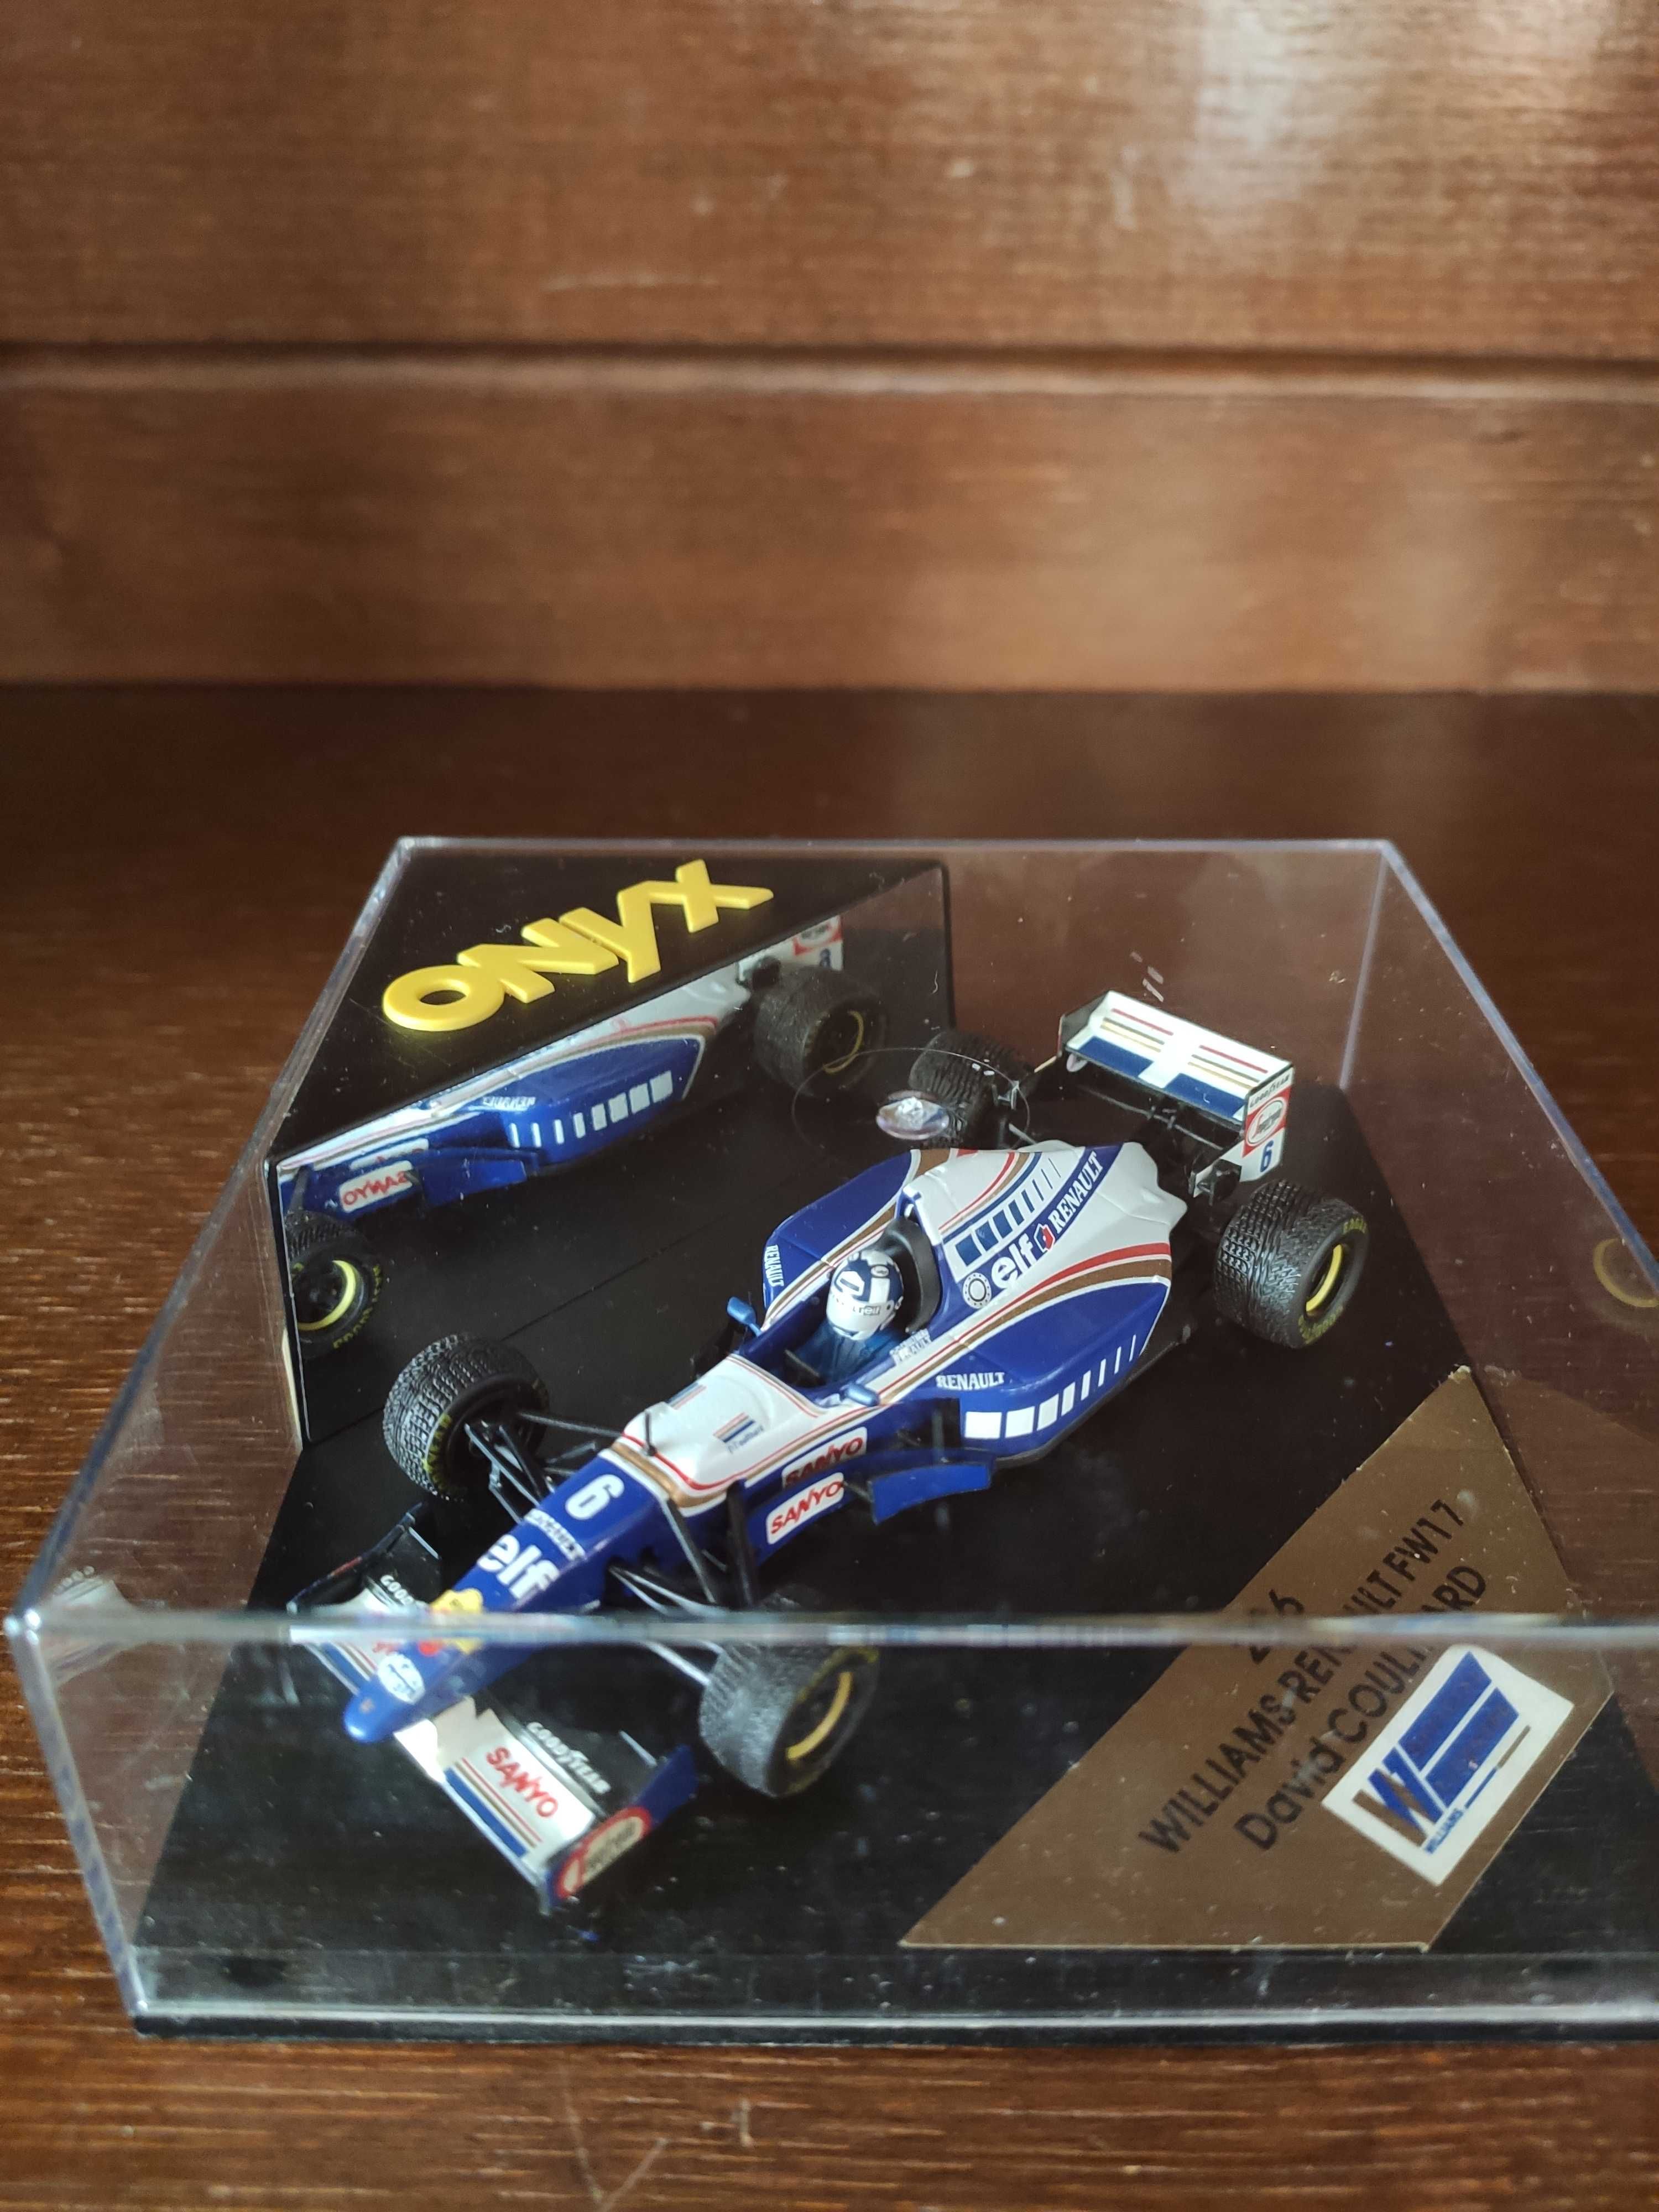 Carro Colecção ONYX 236 F1 Williams FW17 David Coulthard #6 - 1995